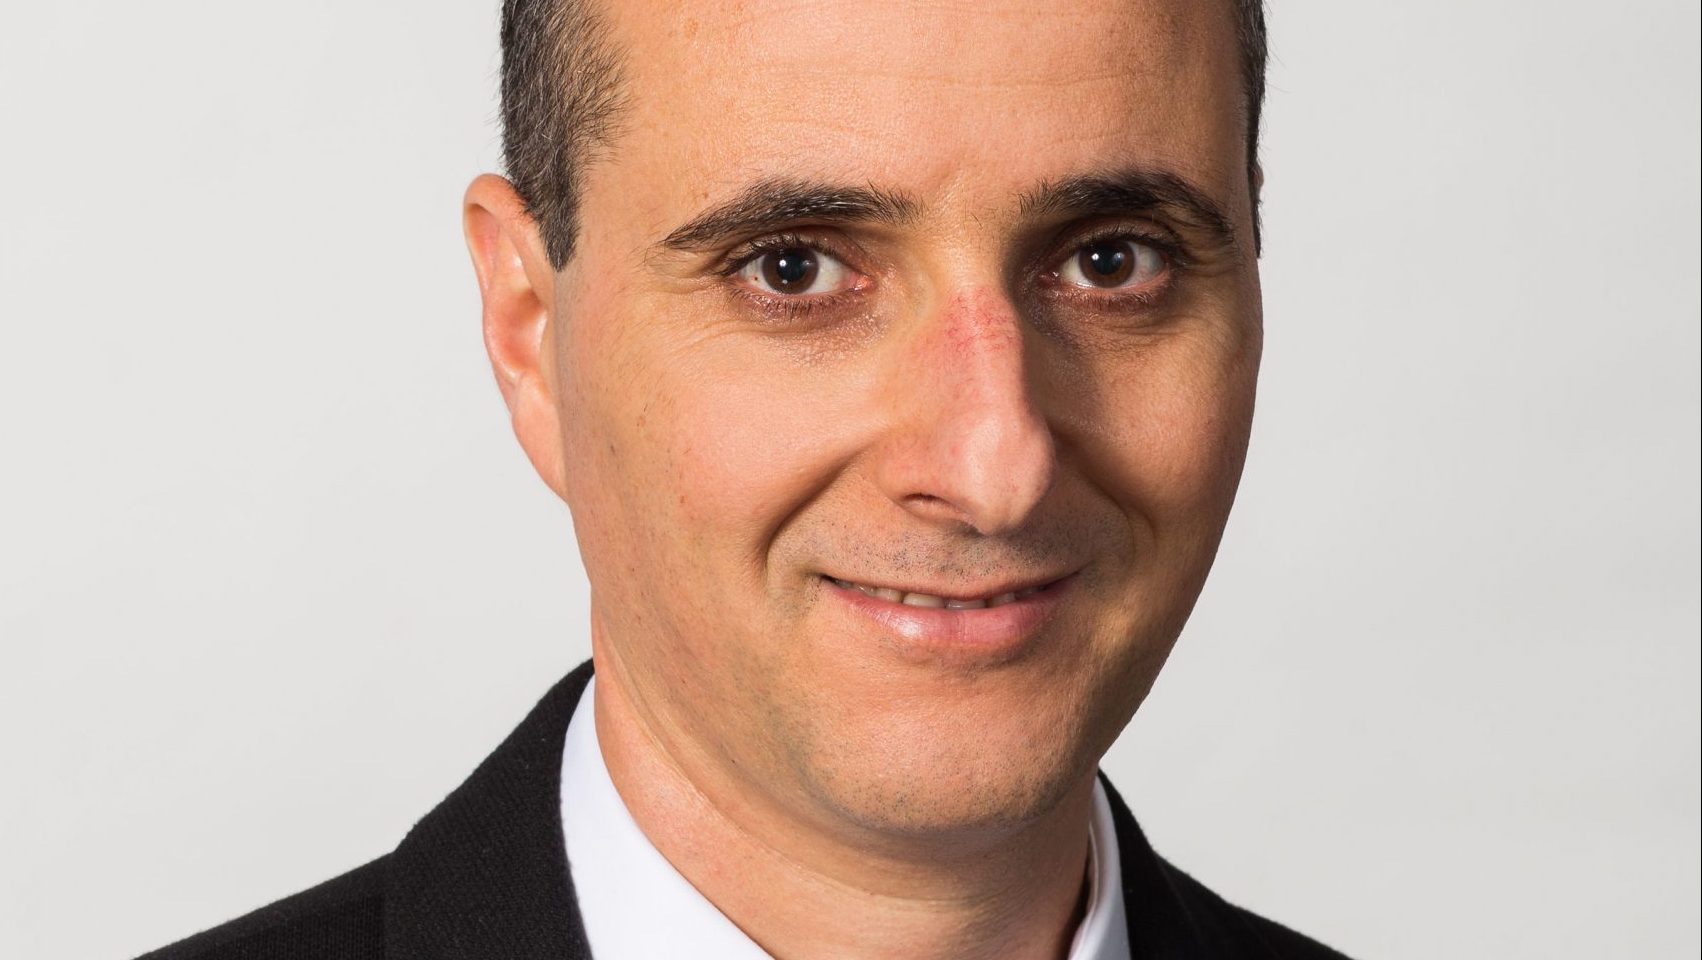 אדי אביעד מונה לסמנכ"ל, ראש תחום המוצרים הפיננסיים באיאון ישראל